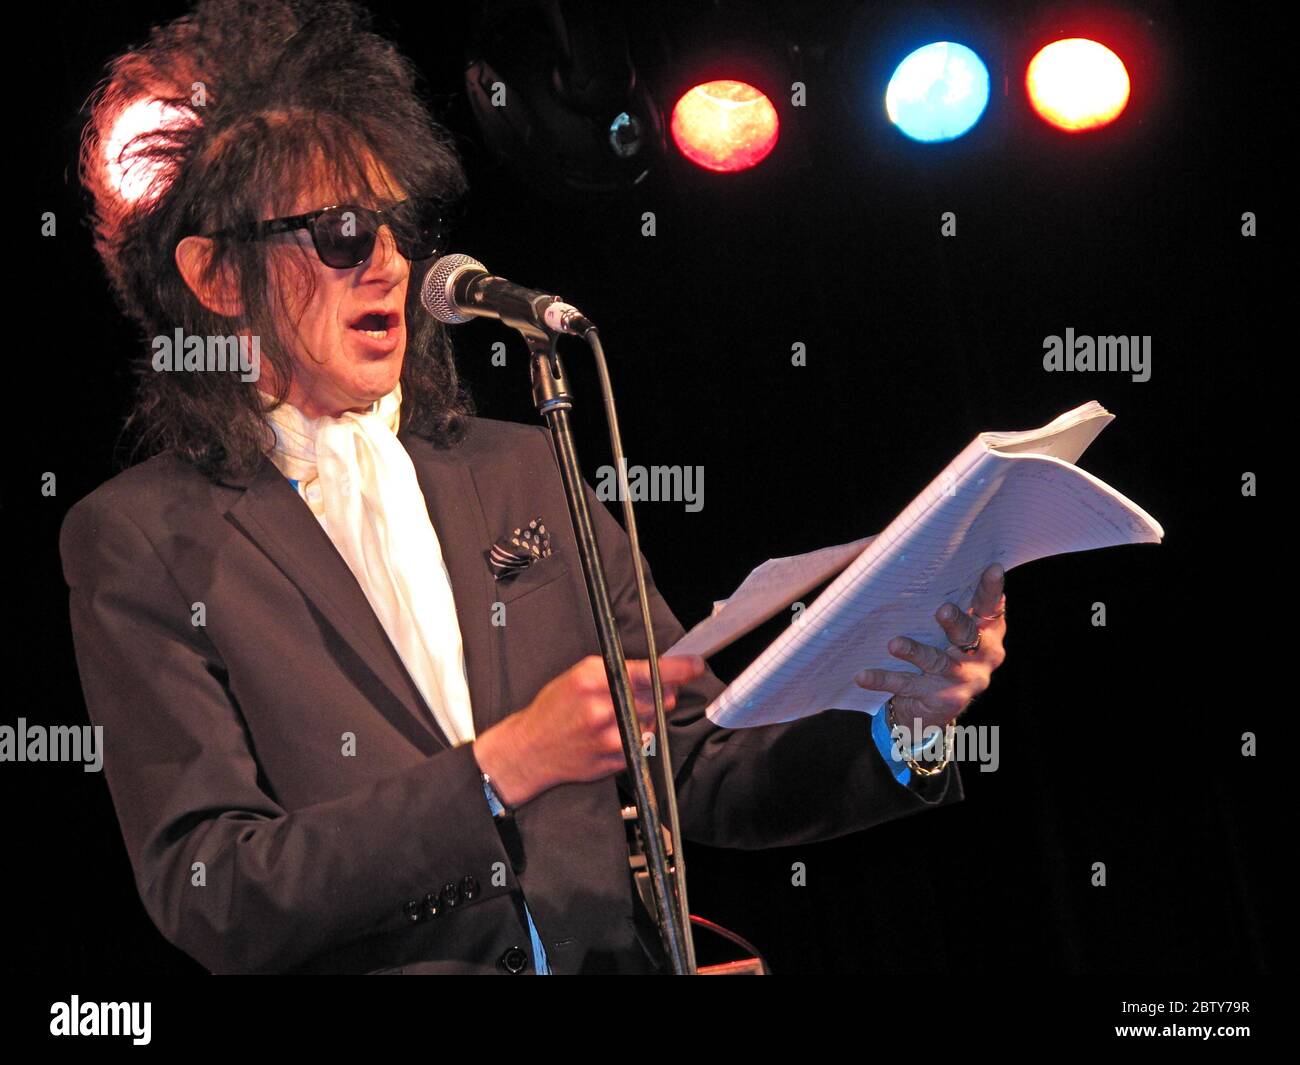 John Cooper-Clark sur scène Liverpool de-Montford Hall, à l'appui de l'automne, 02/07/2011, Angleterre, Royaume-Uni Banque D'Images